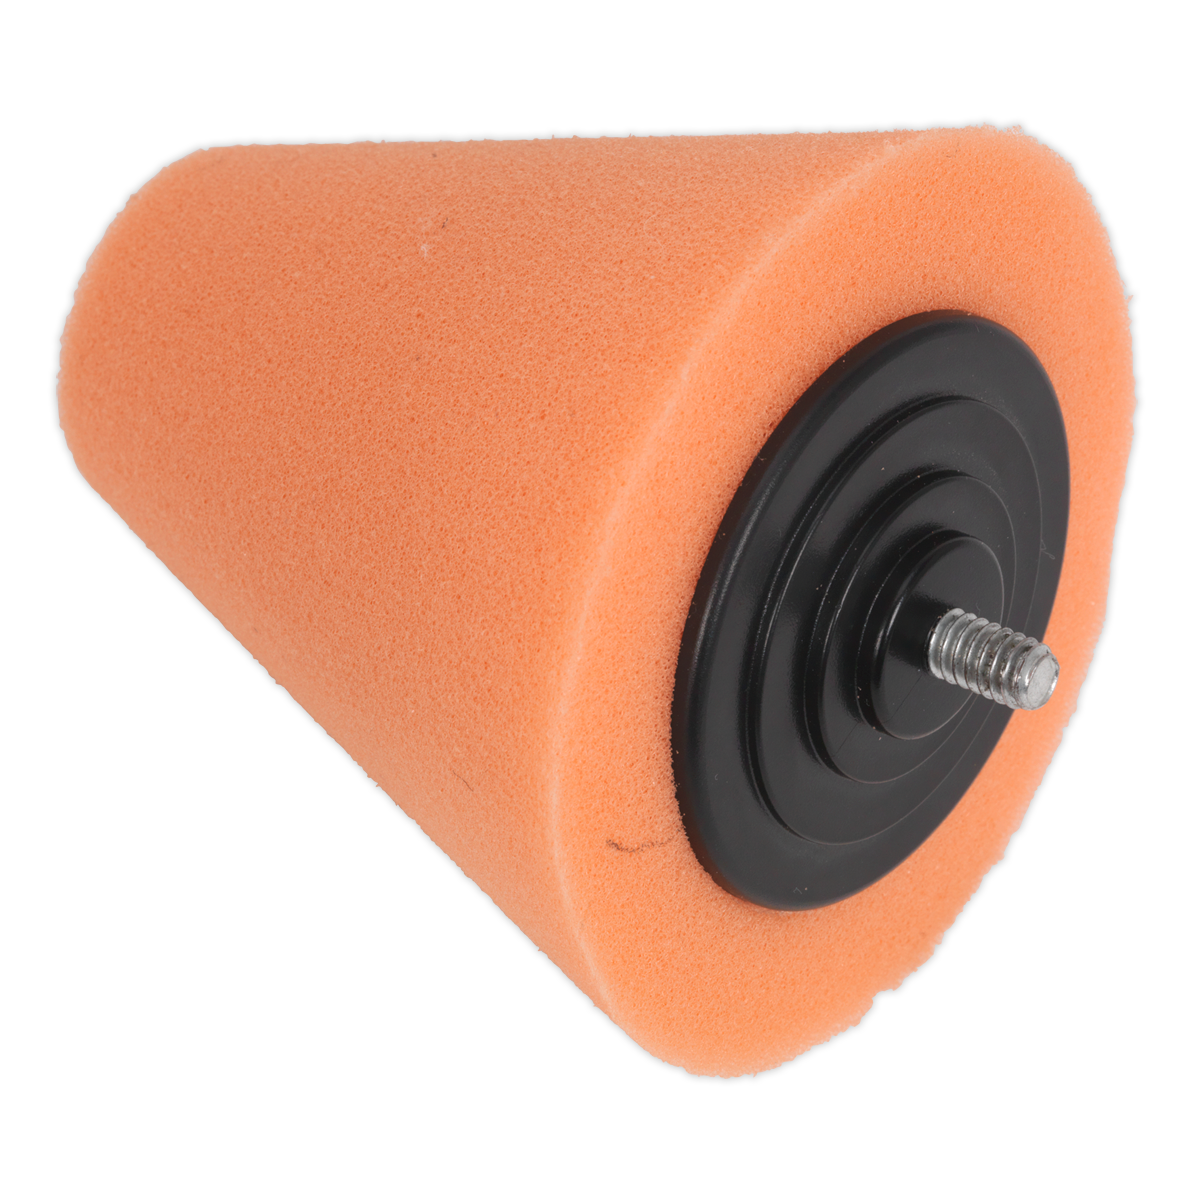 Sealey Buffing & Polishing Foam Cone Orange/Firm